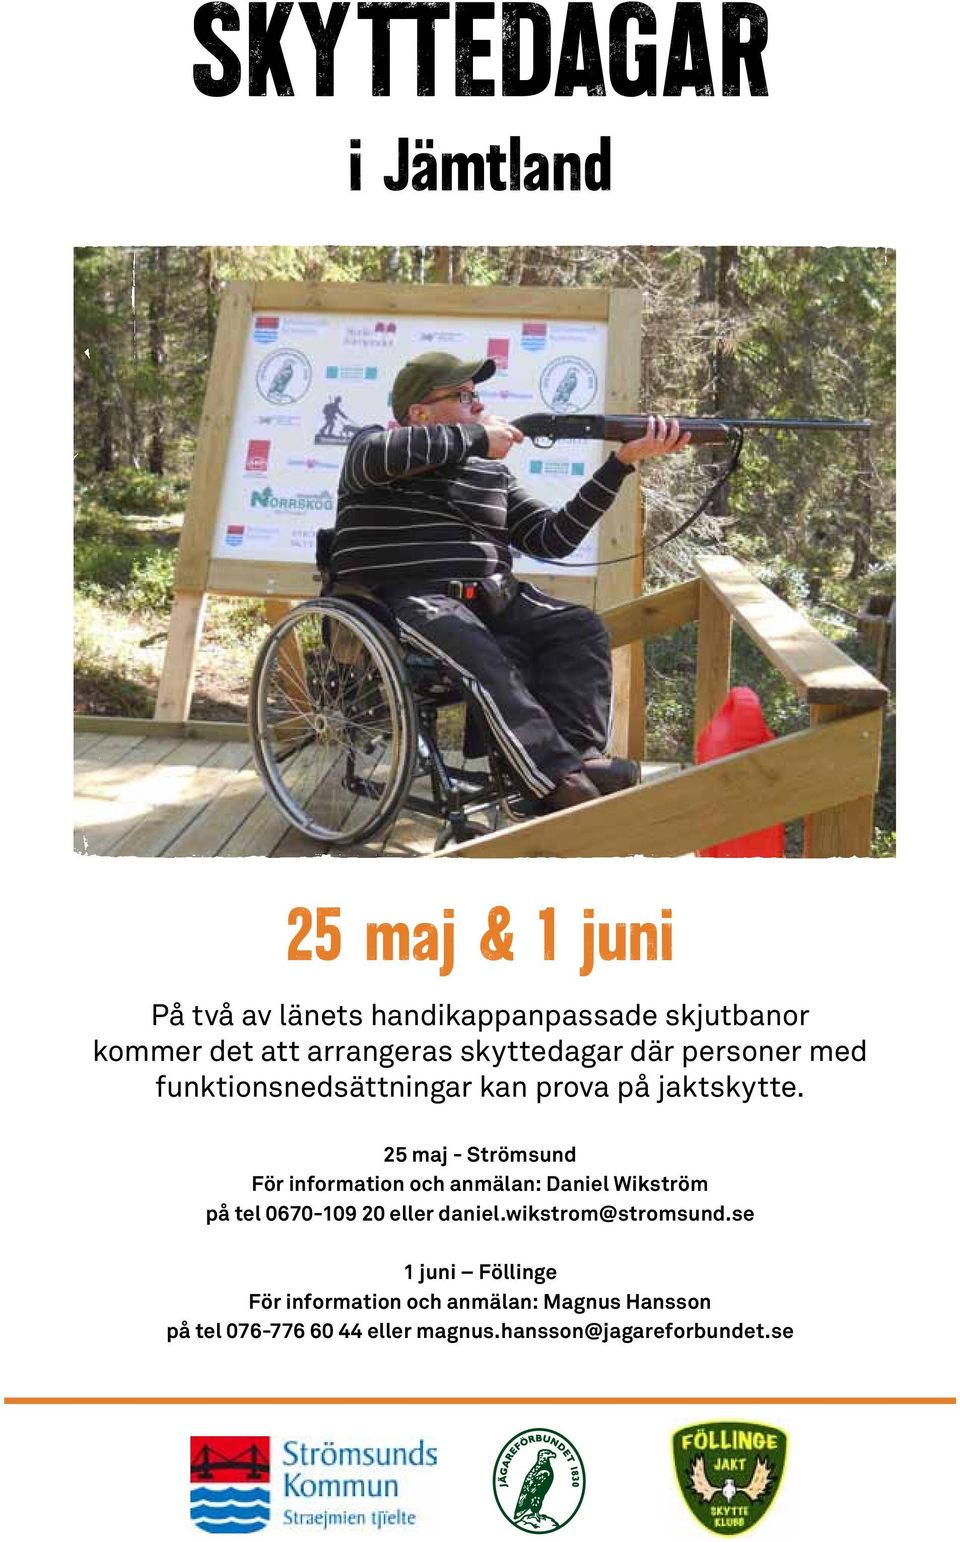 25 maj - Strömsund För information och anmälan: Daniel Wikström på tel 0670-109 20 eller daniel.